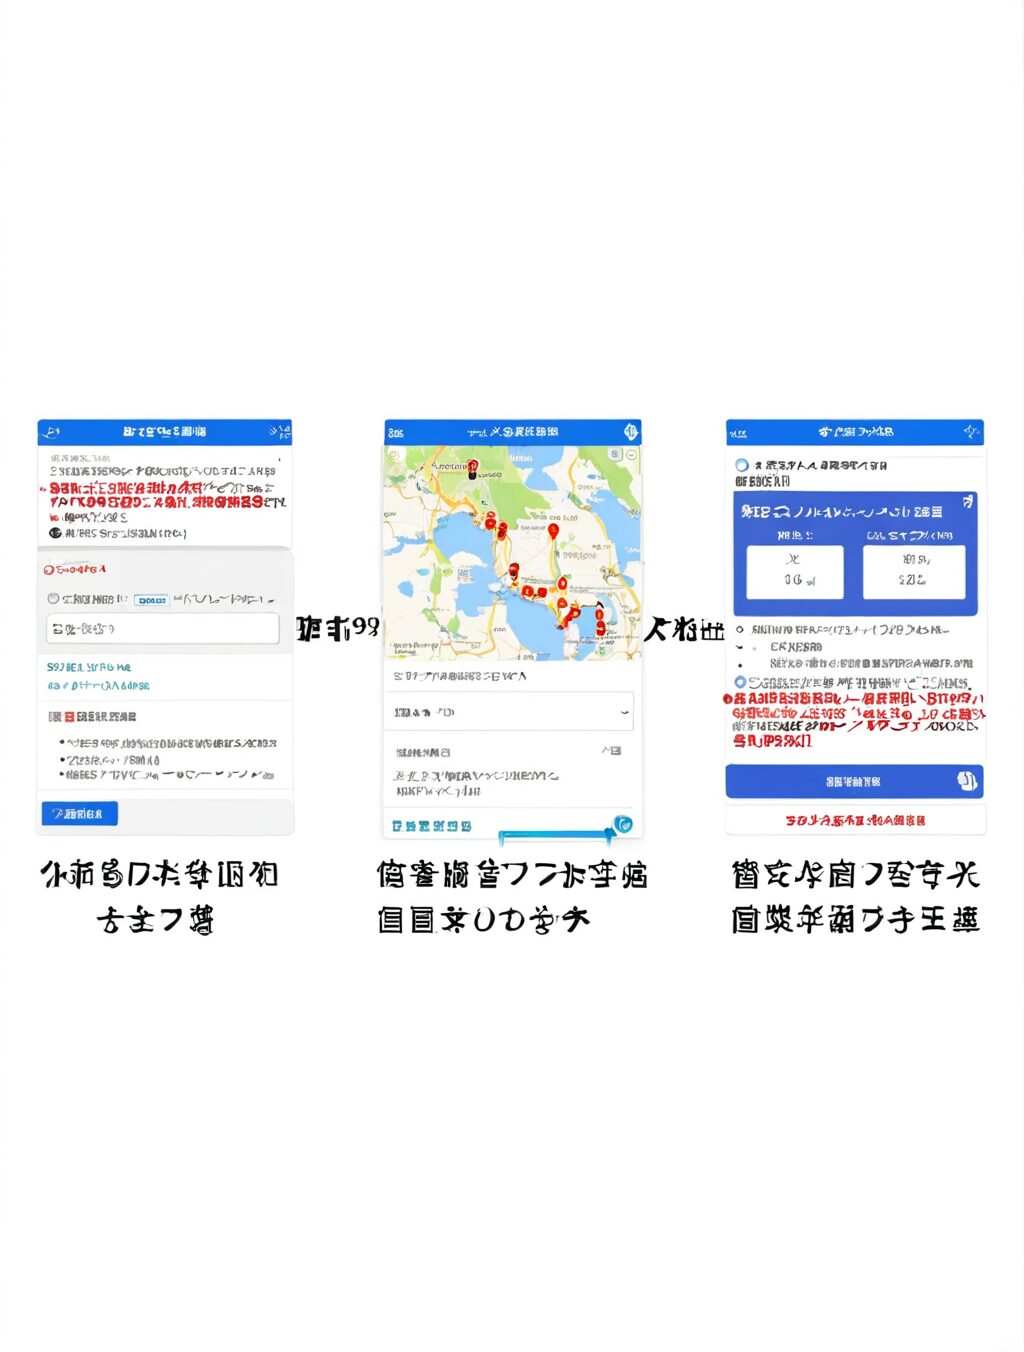 visit japan web 登録方法 子供